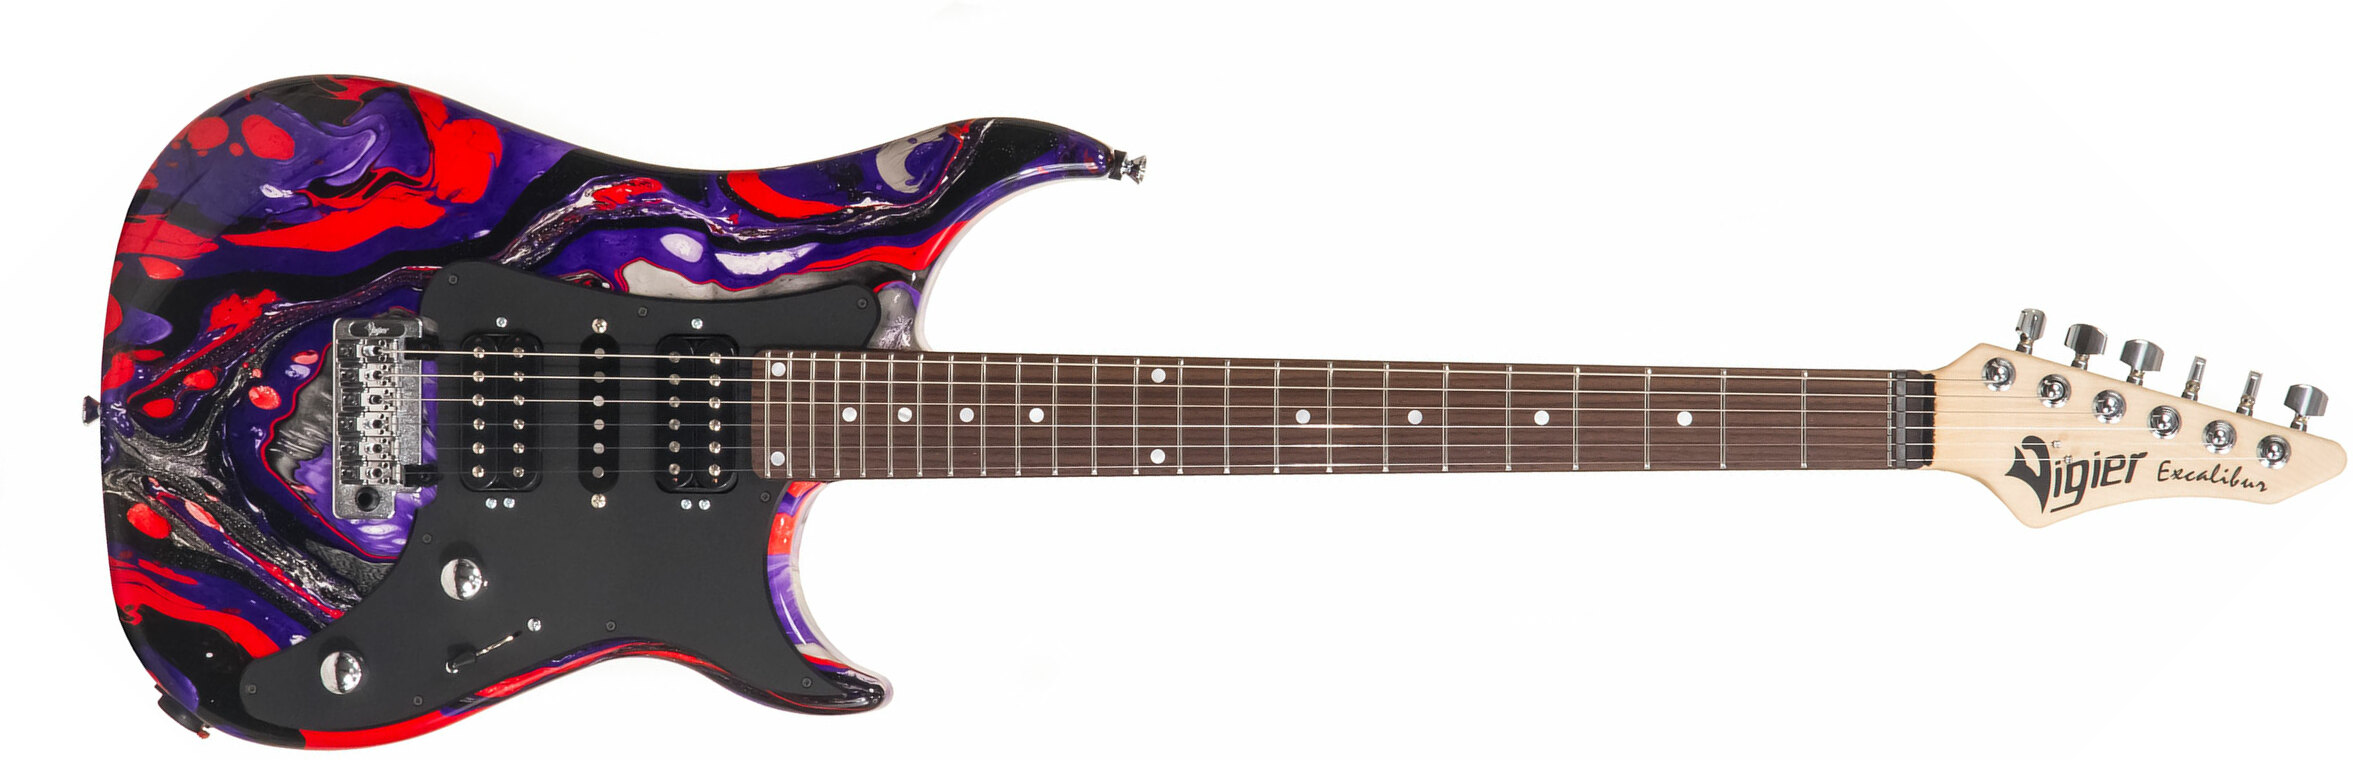 Vigier Excalibur Supraa Hsh Trem Rw - Rock Art Purple Red Black - Str shape electric guitar - Main picture